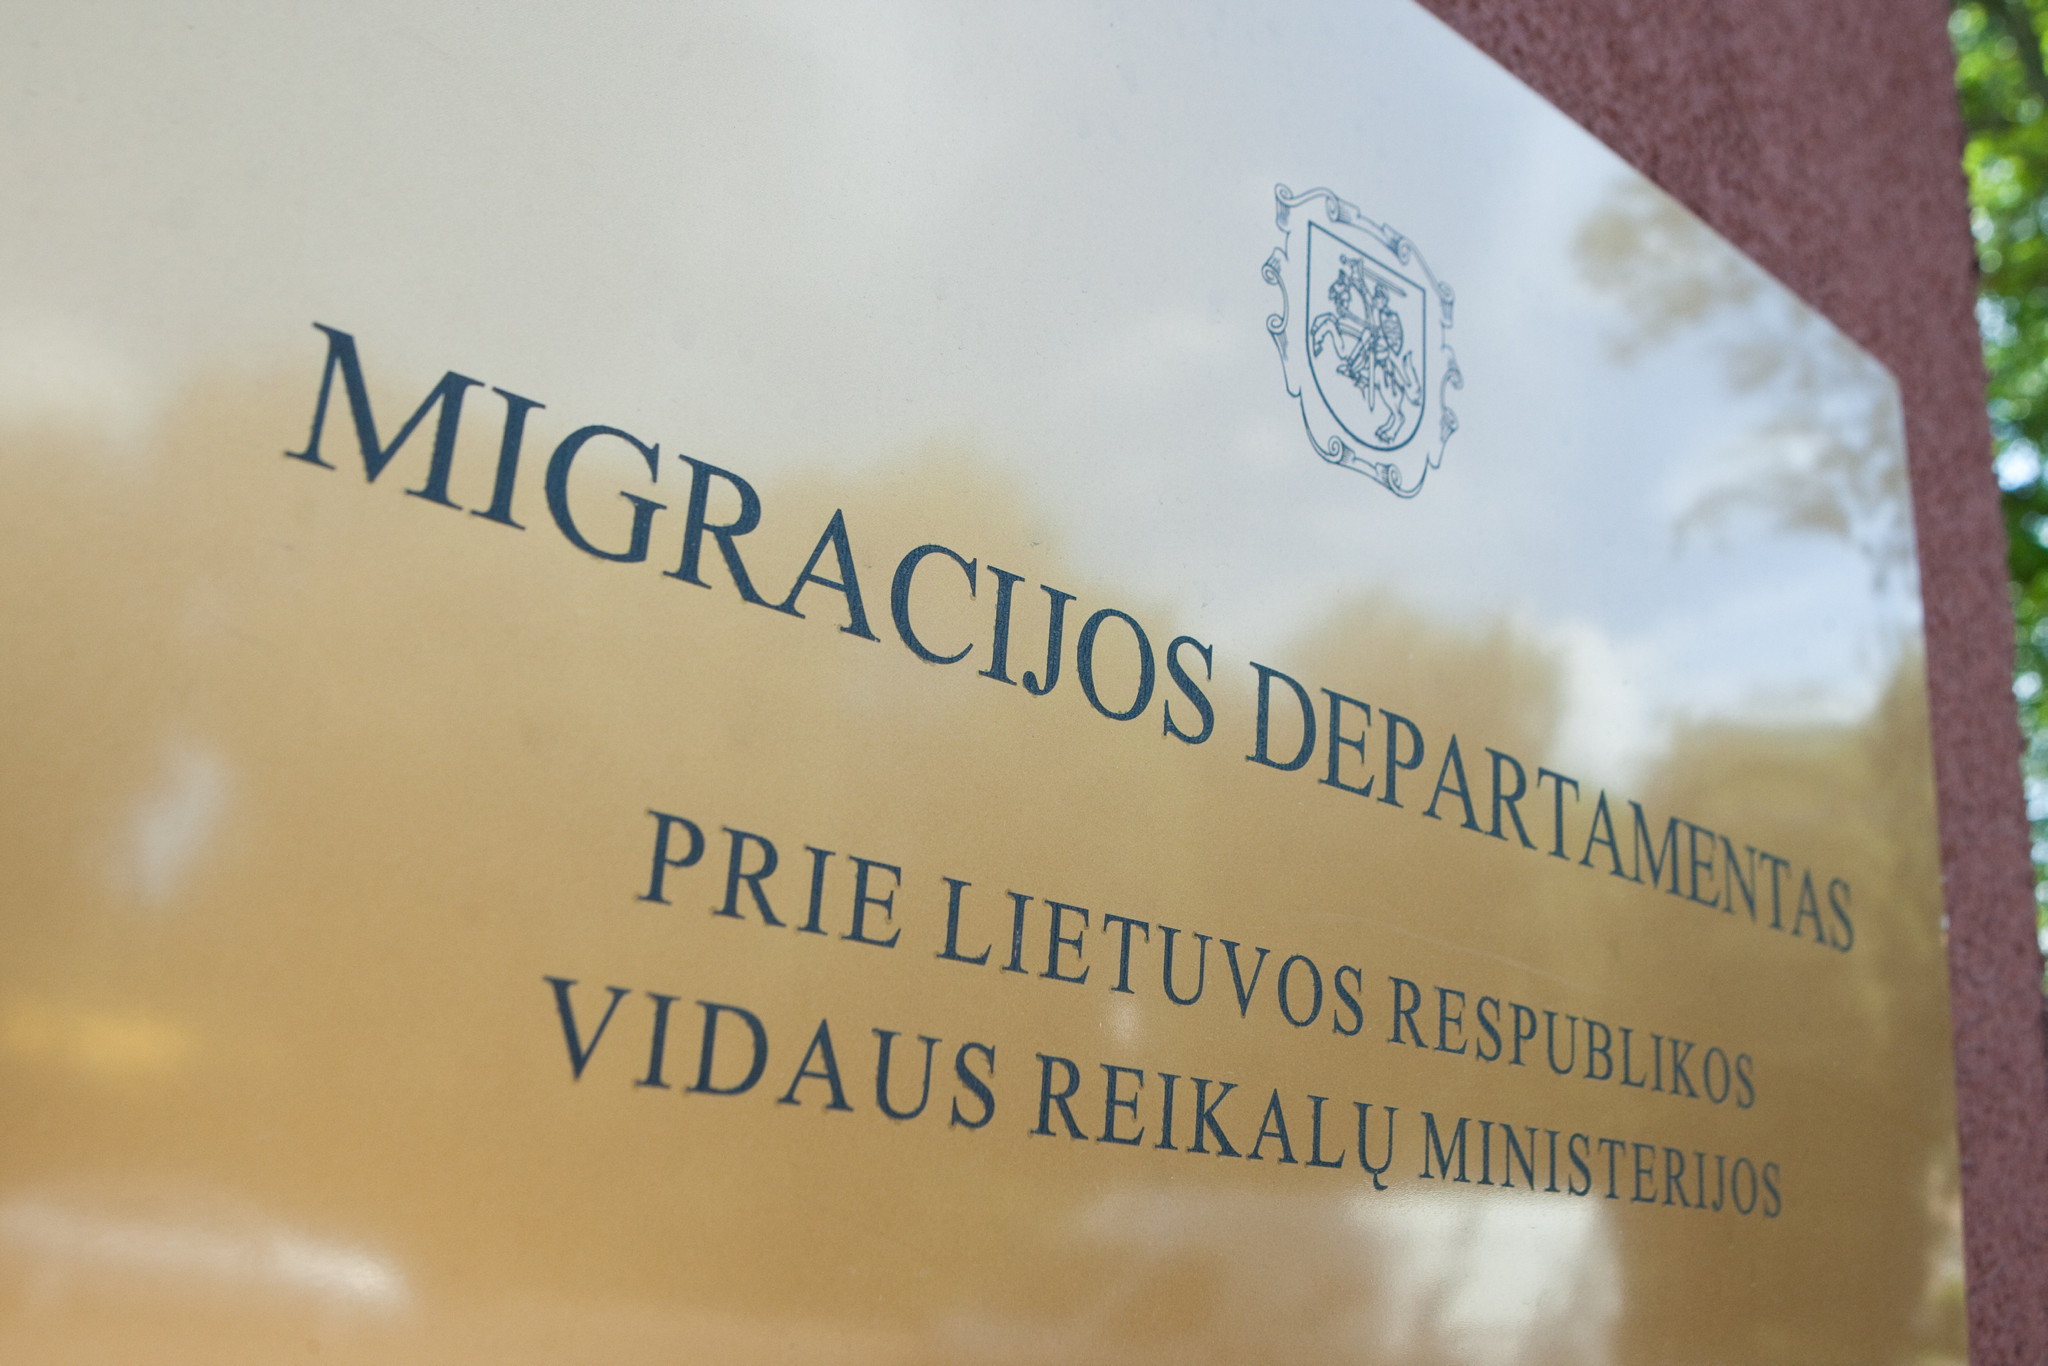 Департамент миграции: каковы правила и особенности выдачи национальной визы?